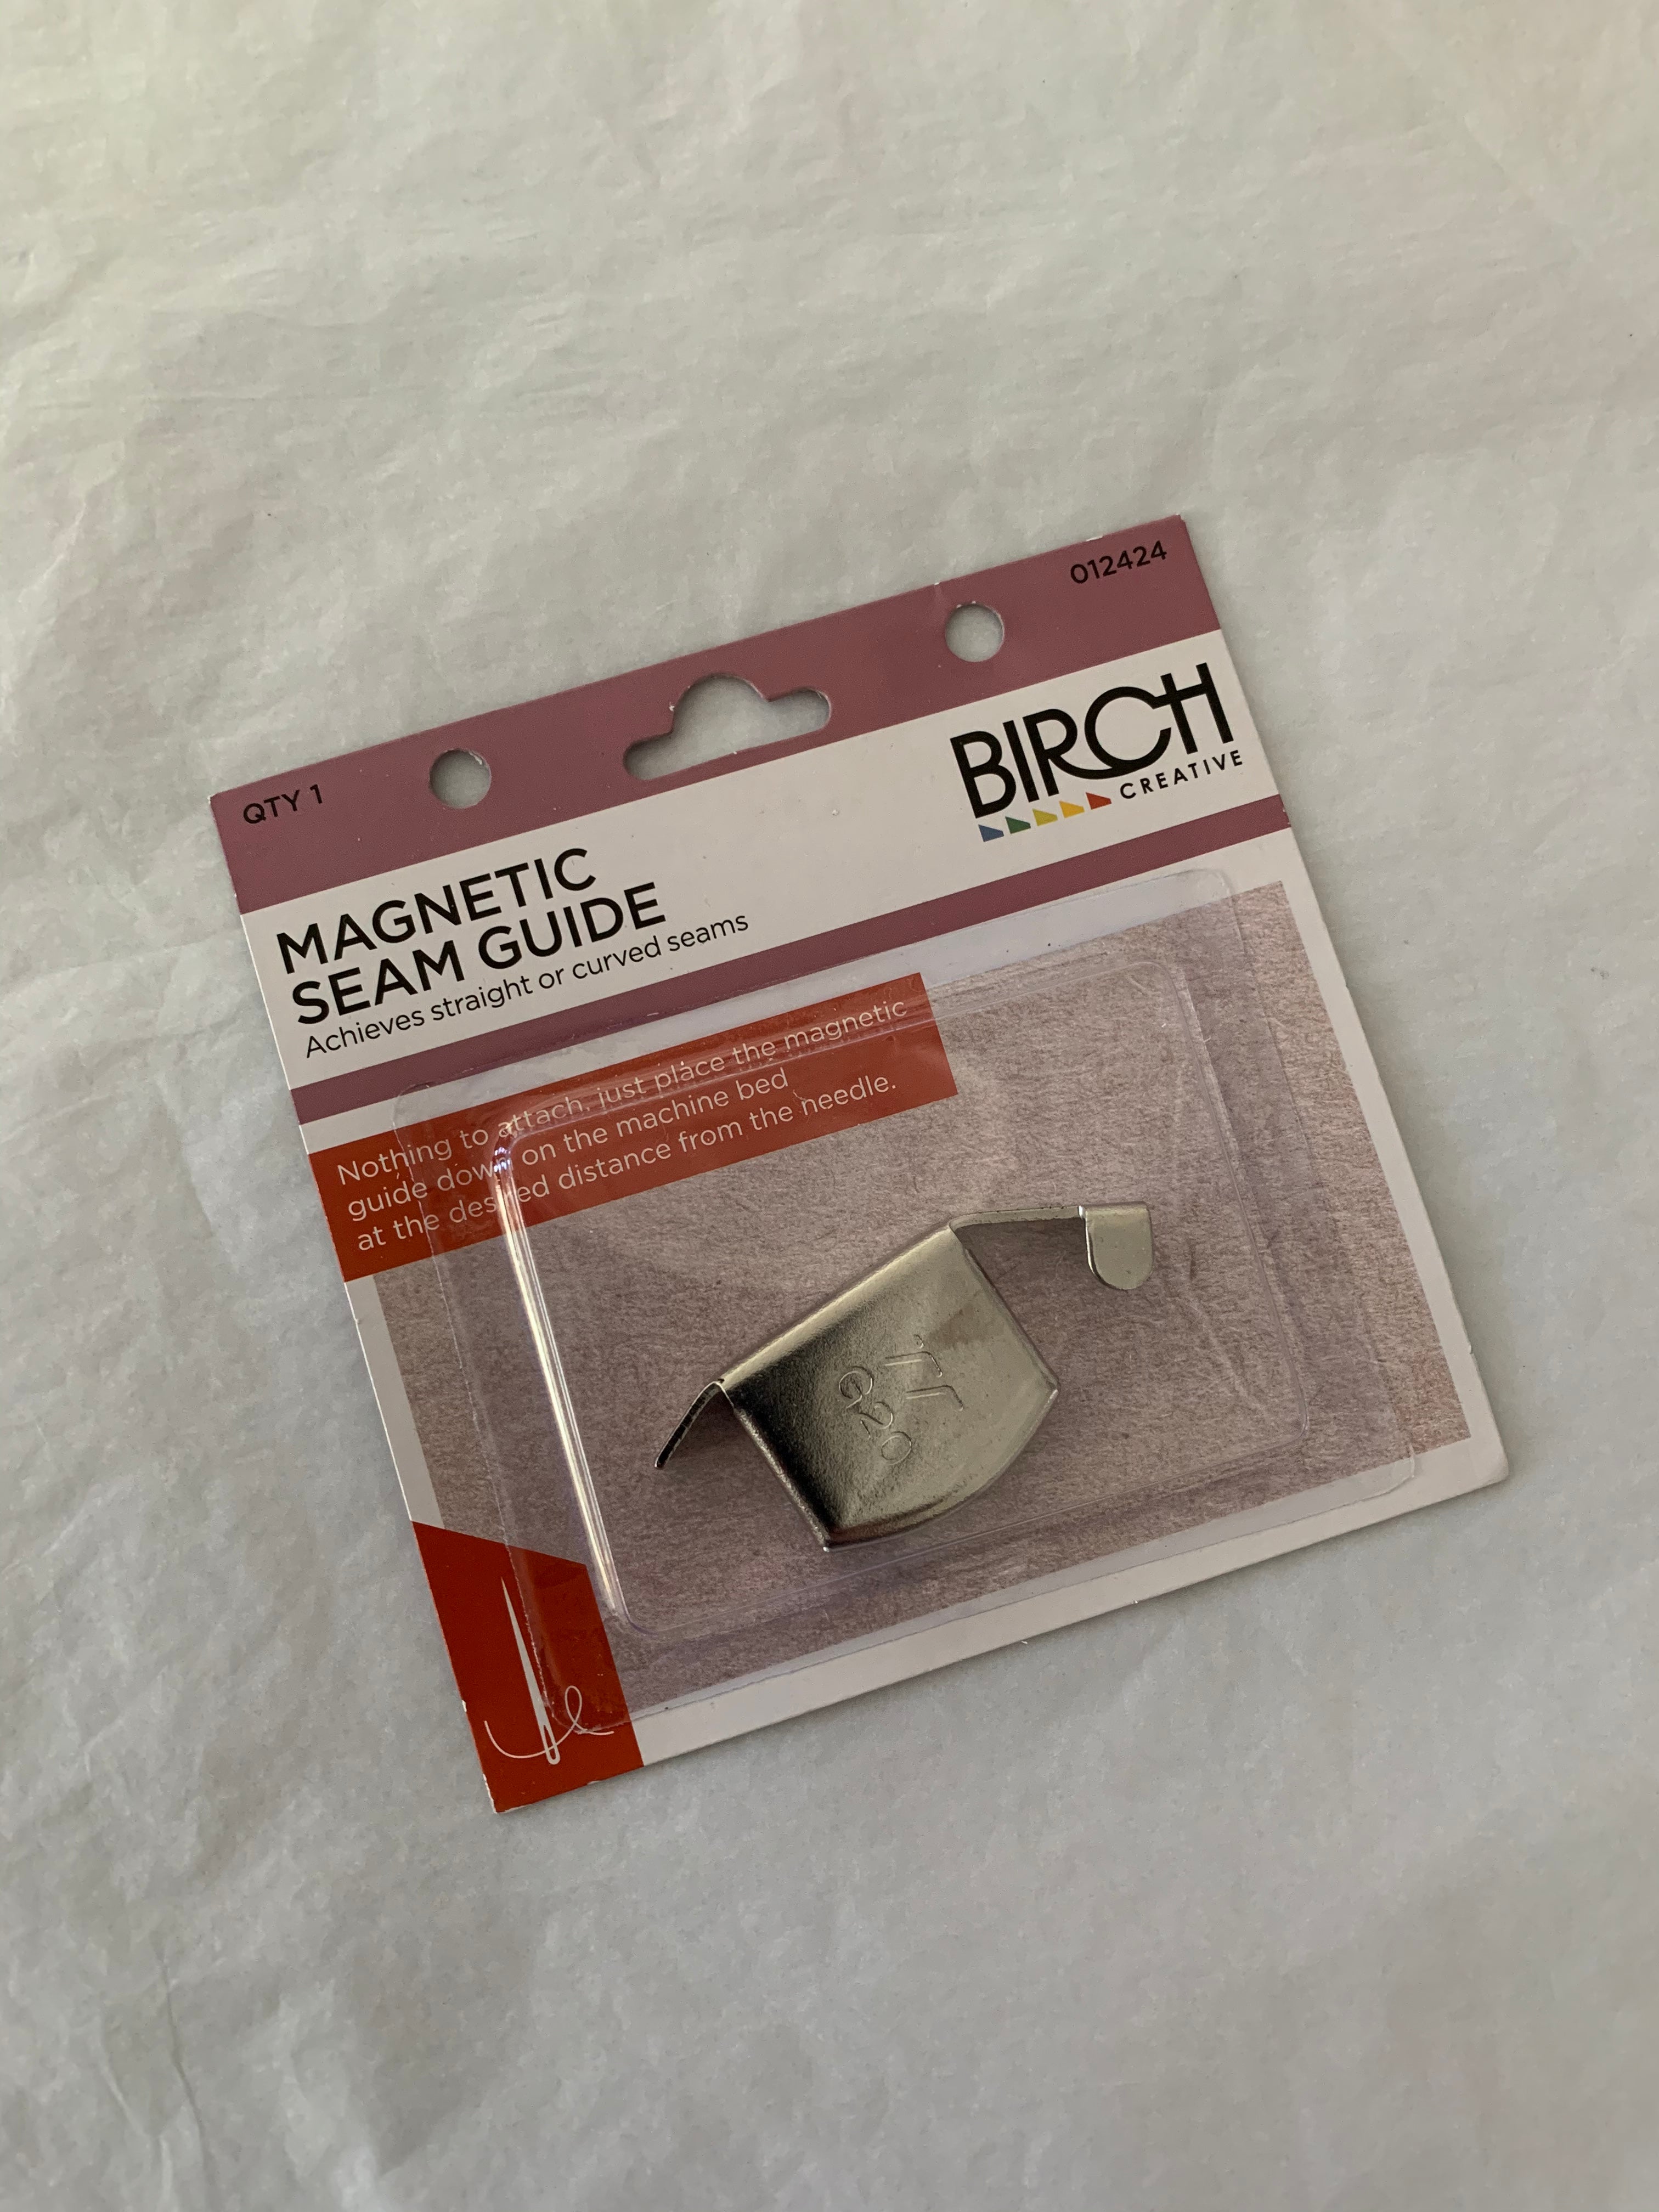 Birch Magnetic Seam Guide